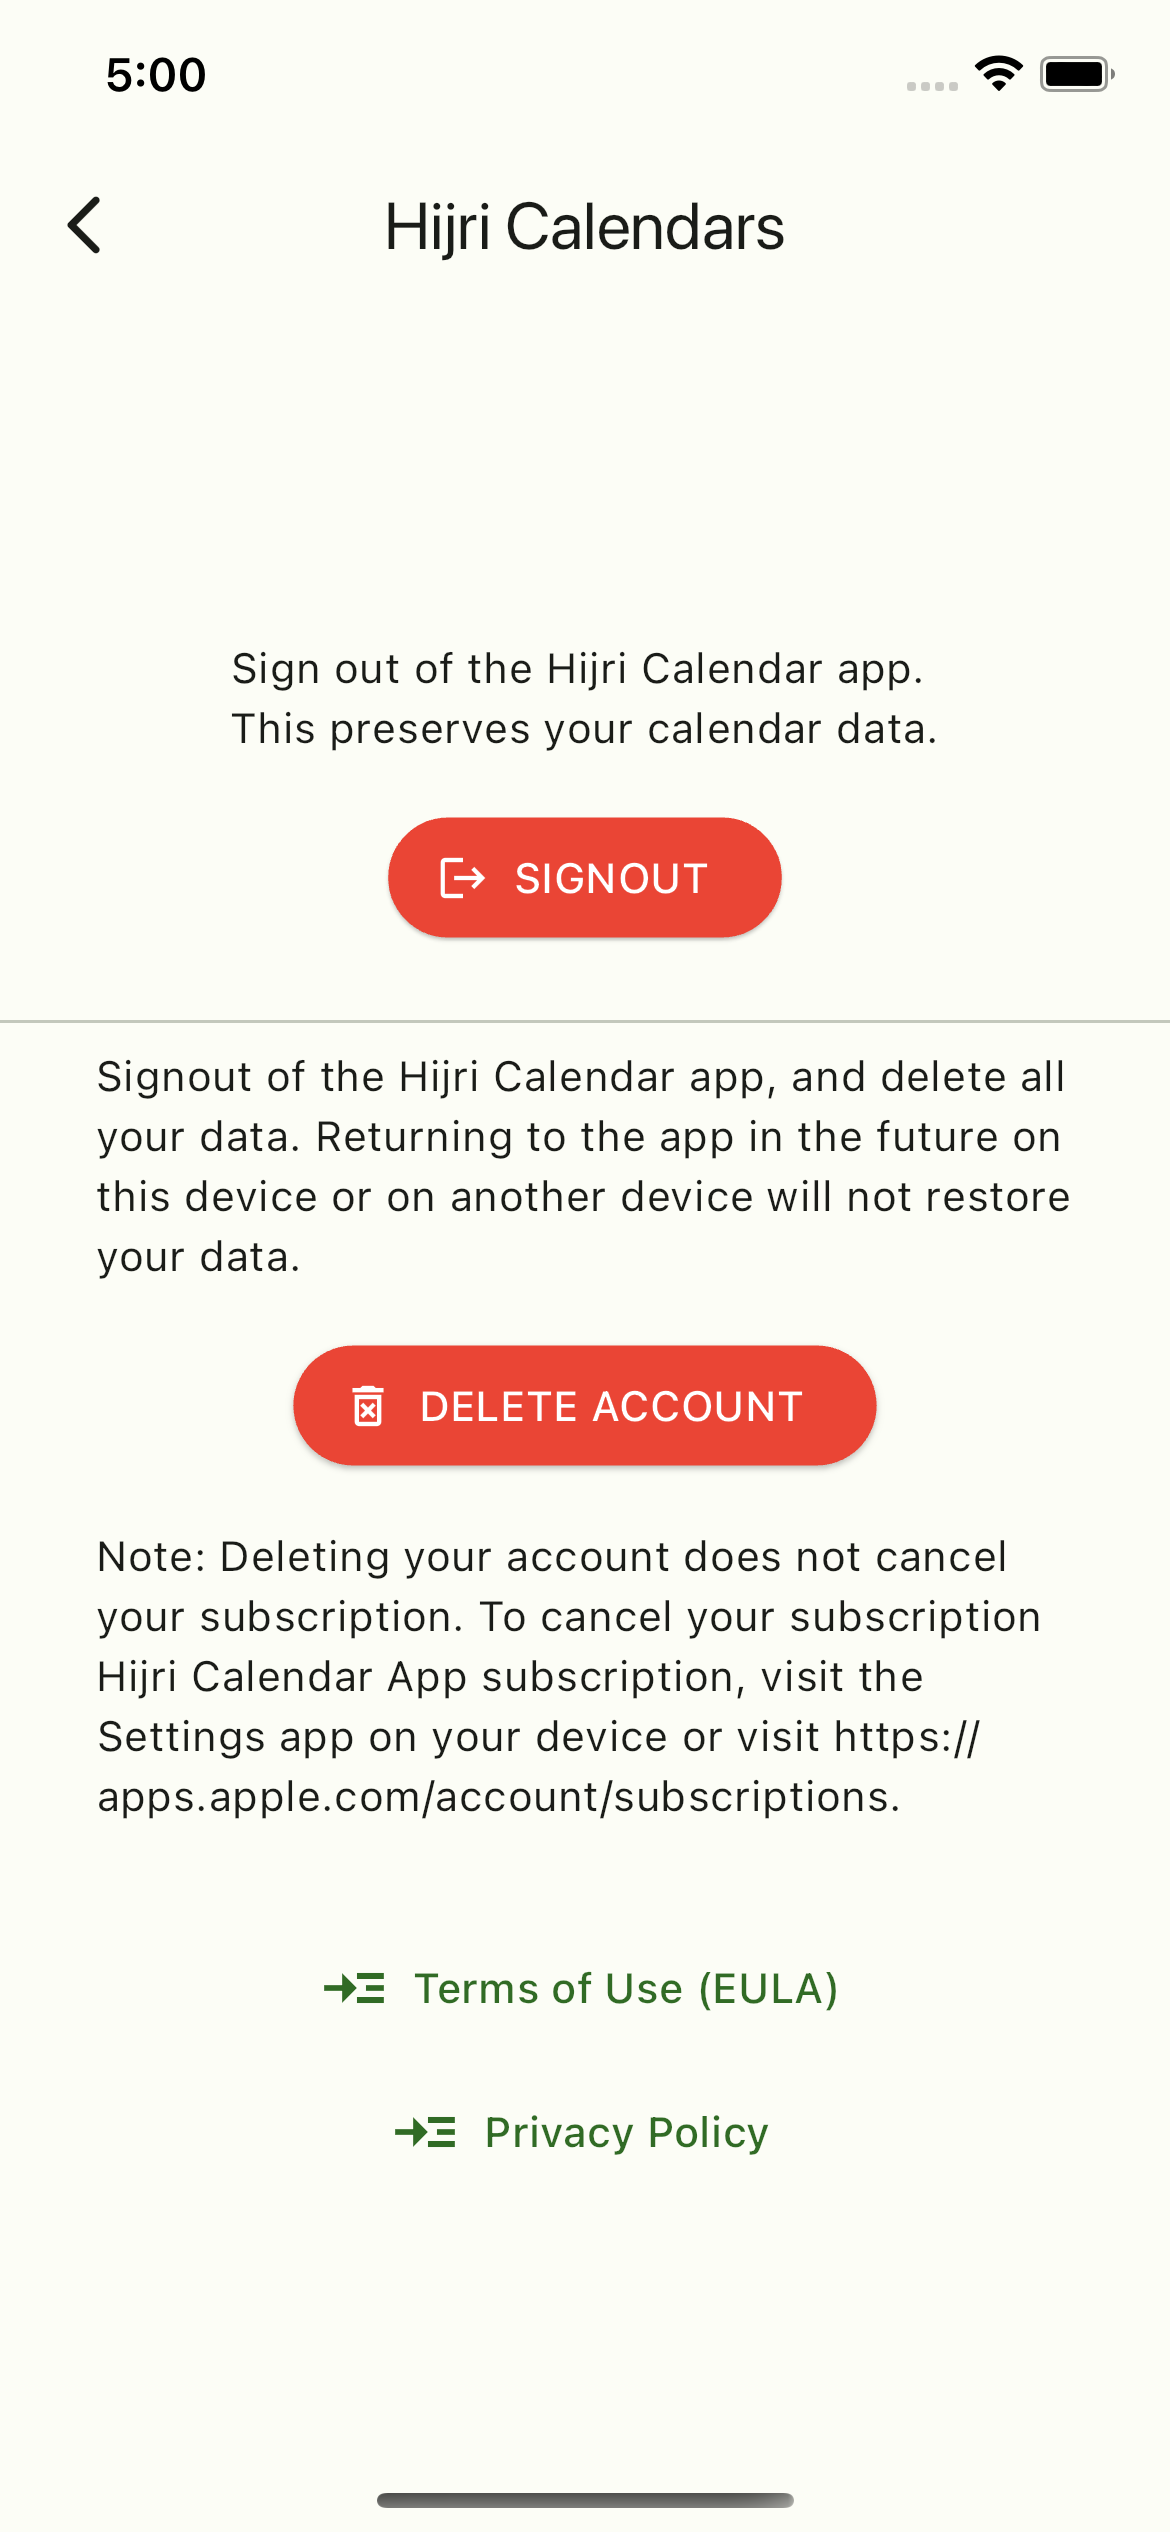 Hijri Calendar App - Account Settings